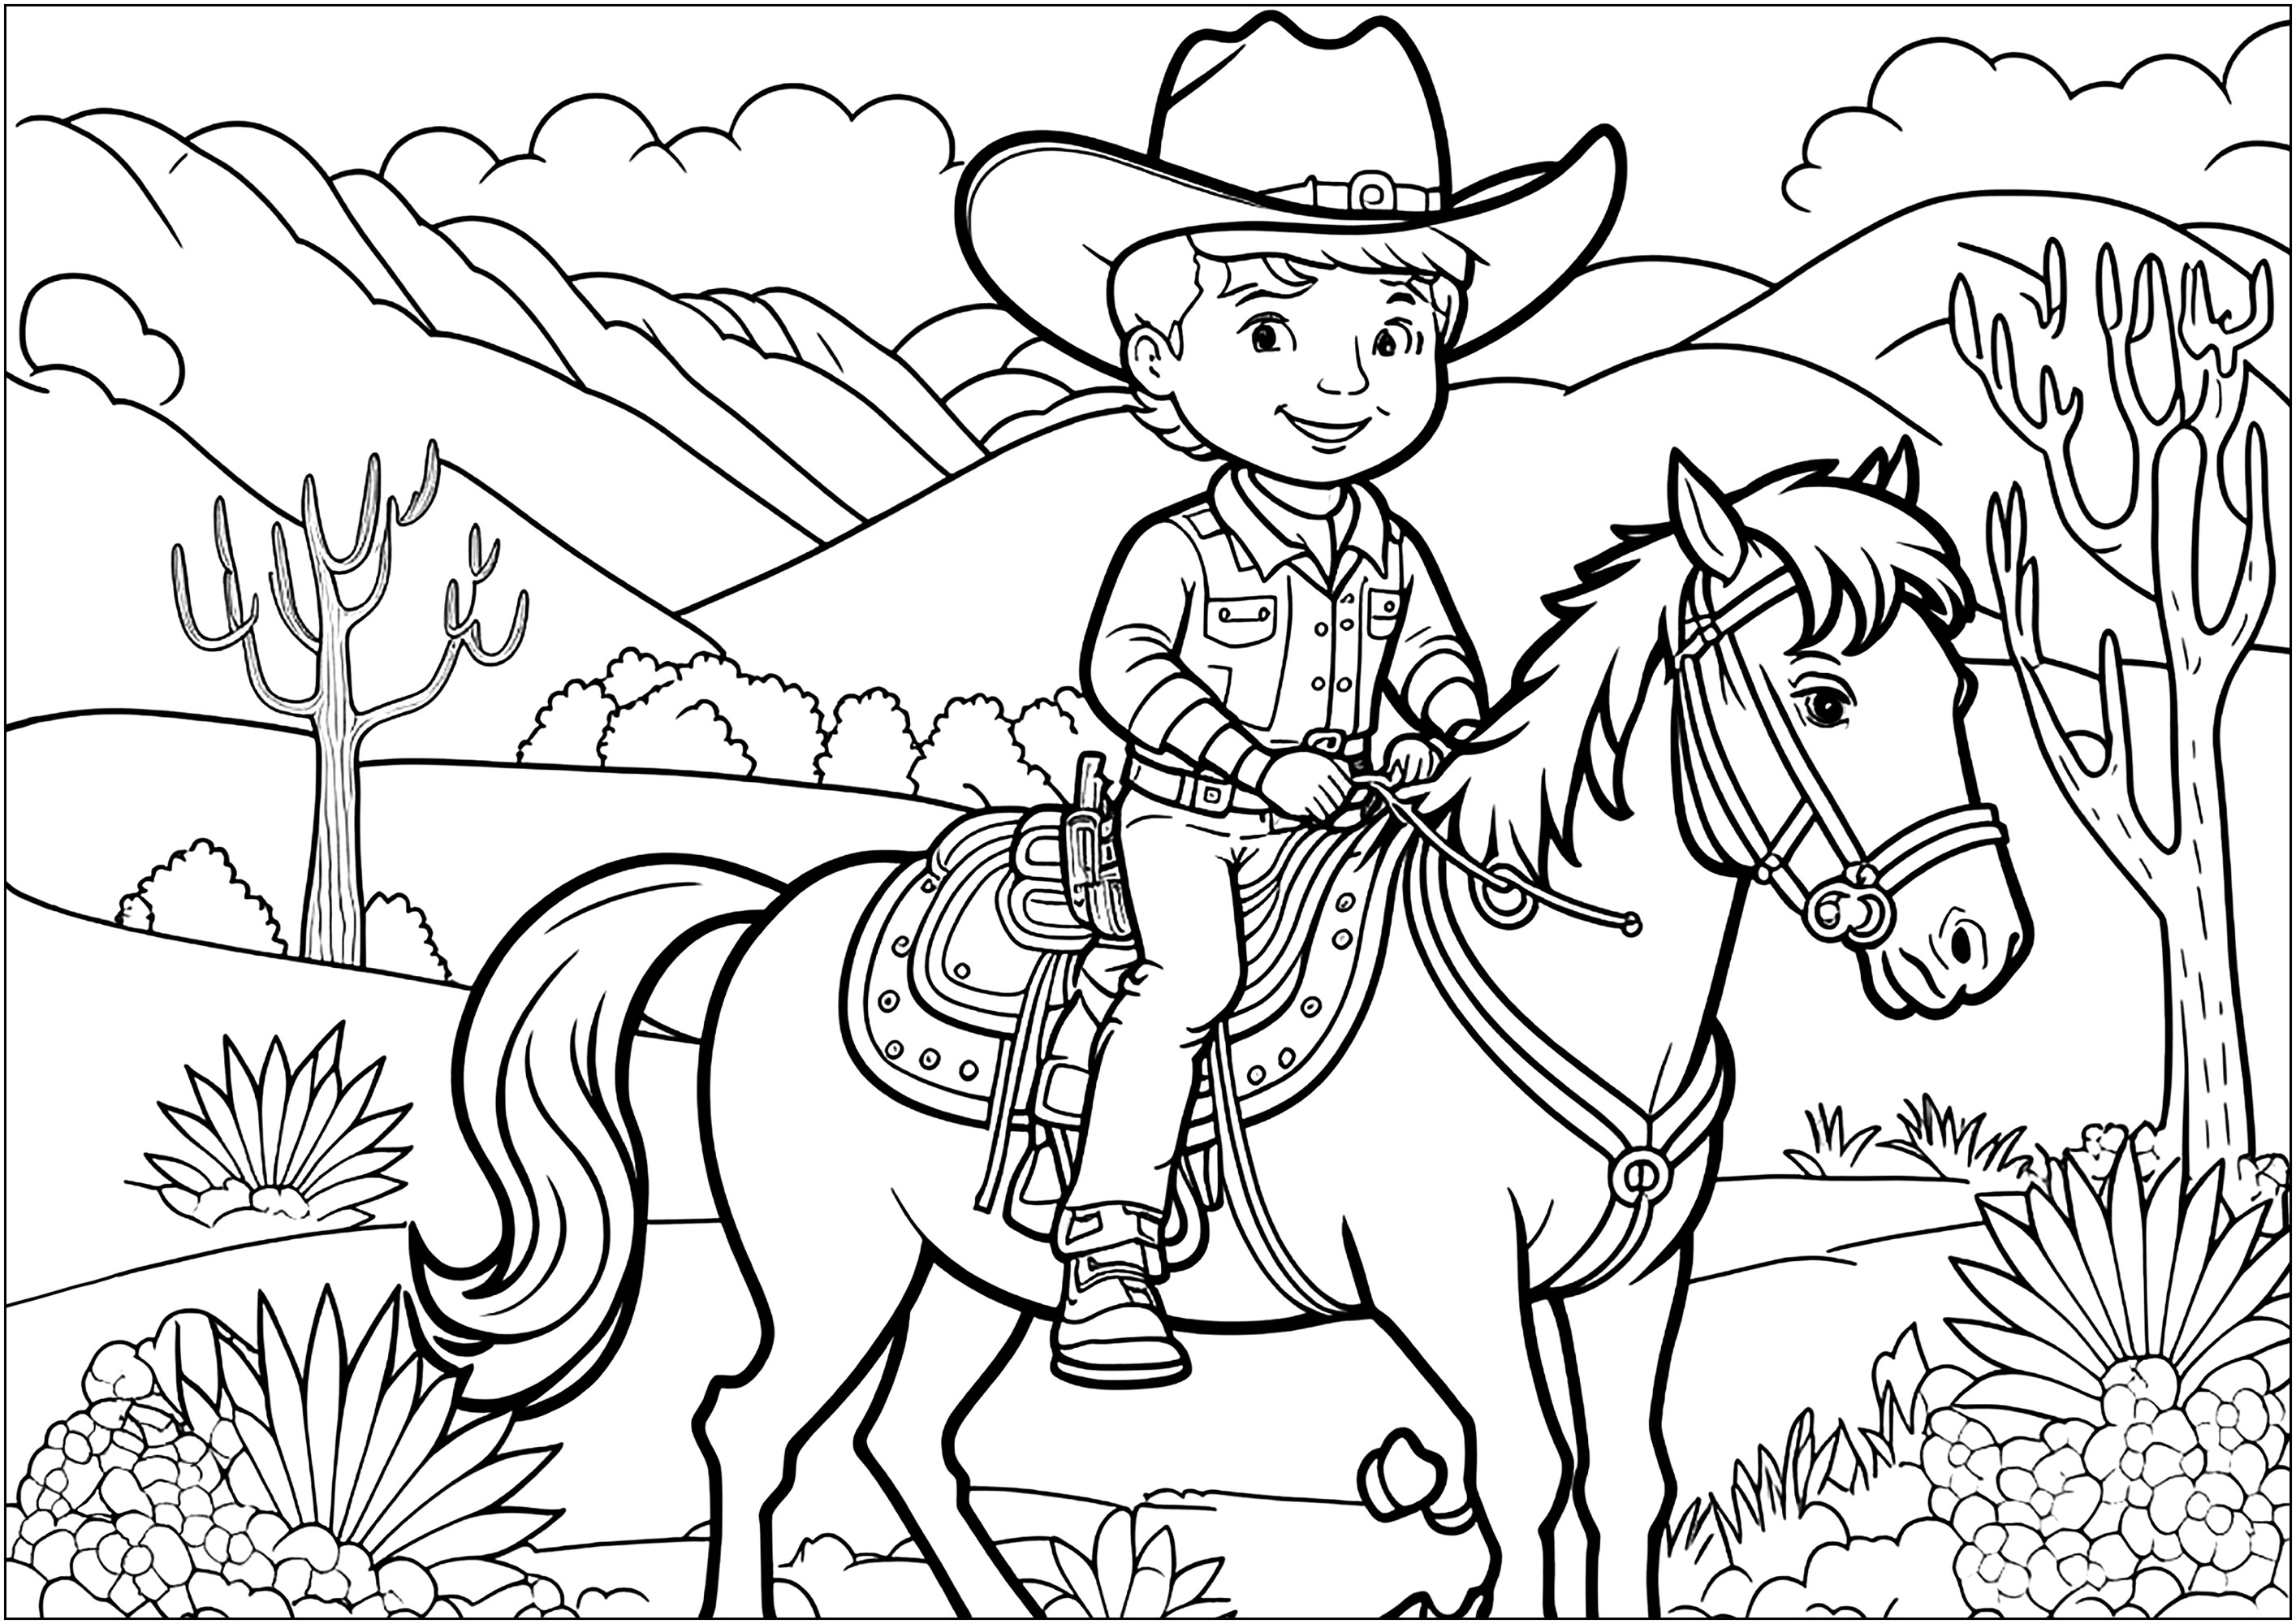 Un Cowboy orgulloso sobre su caballo, en un paisaje parecido a los de los westerns